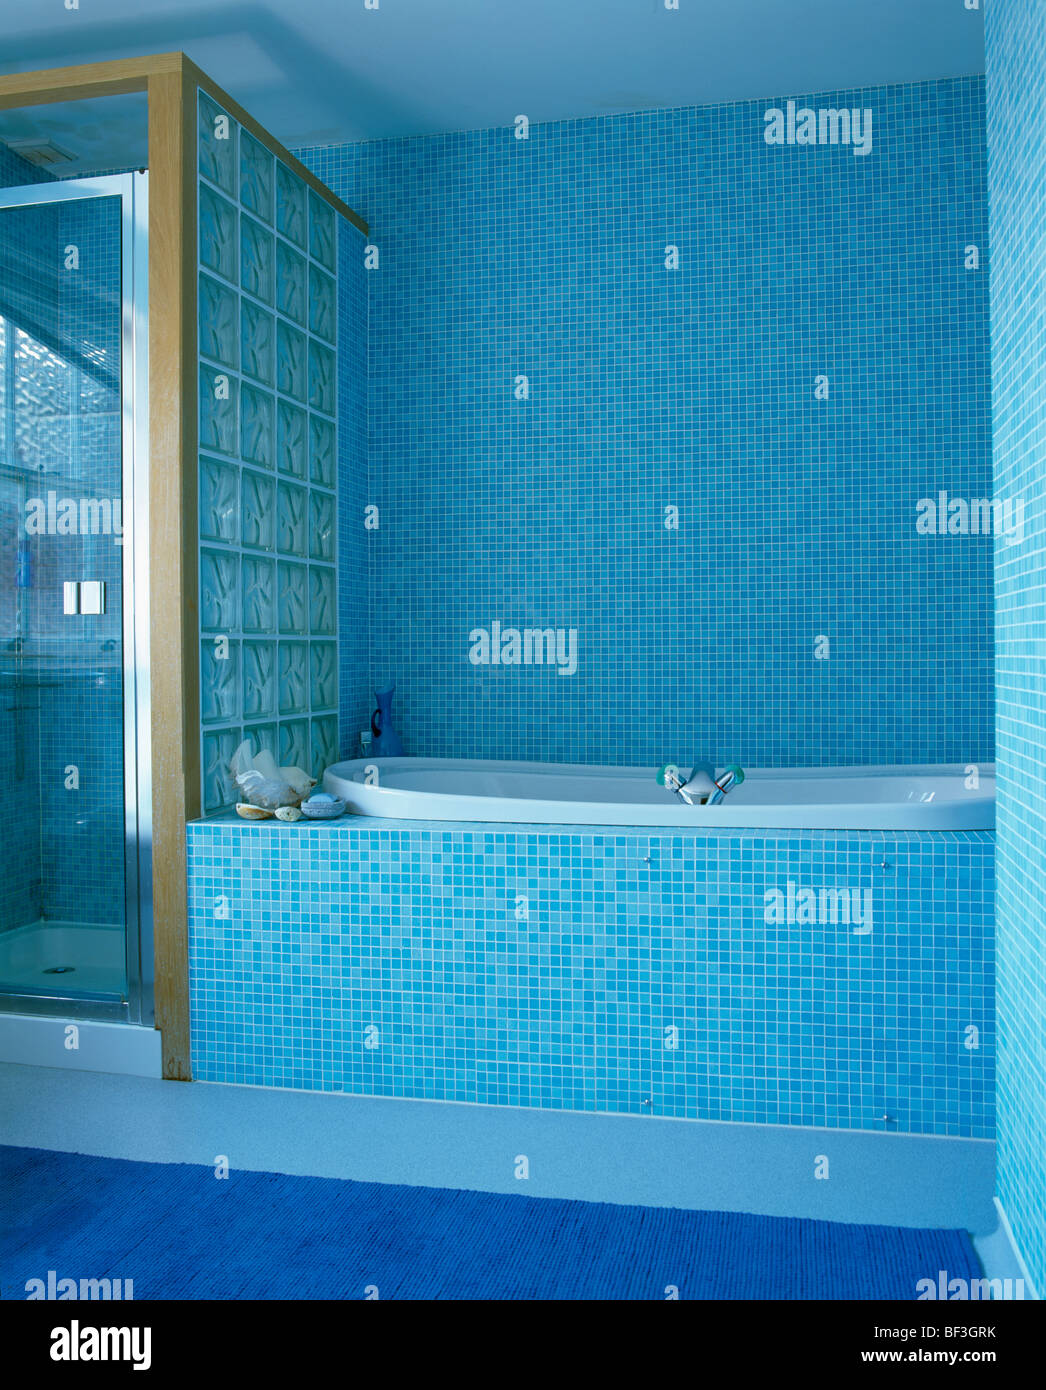 Moderne blaue Mosaik gefliesten Bad mit Glaswand teilen Bad Duschkabine  Stockfotografie - Alamy